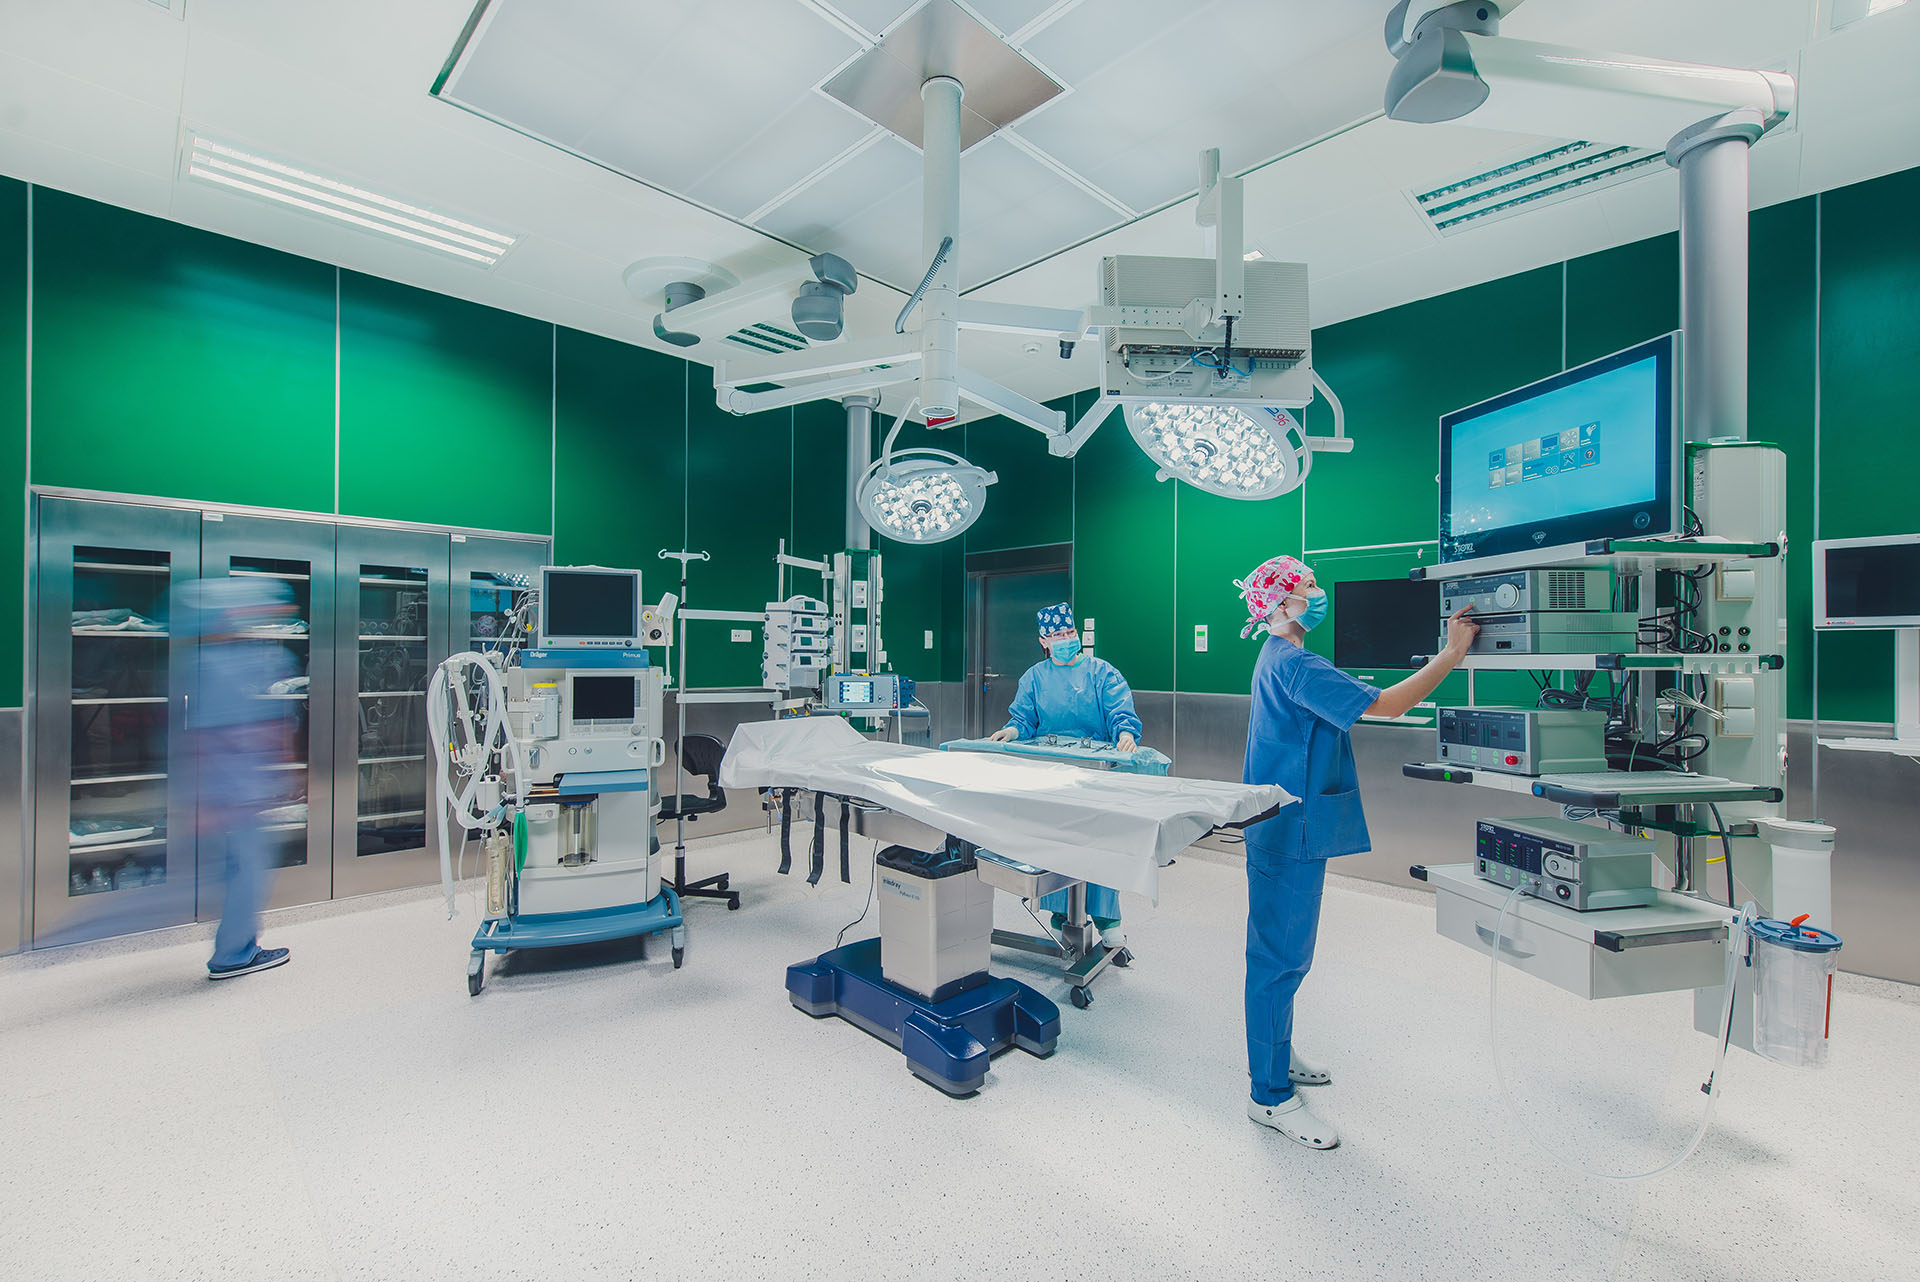 Sala operacyjna ze stołem operacyjnym po środku wokół którego stoją lekarze, w tle znajdują się urządzenia medyczne